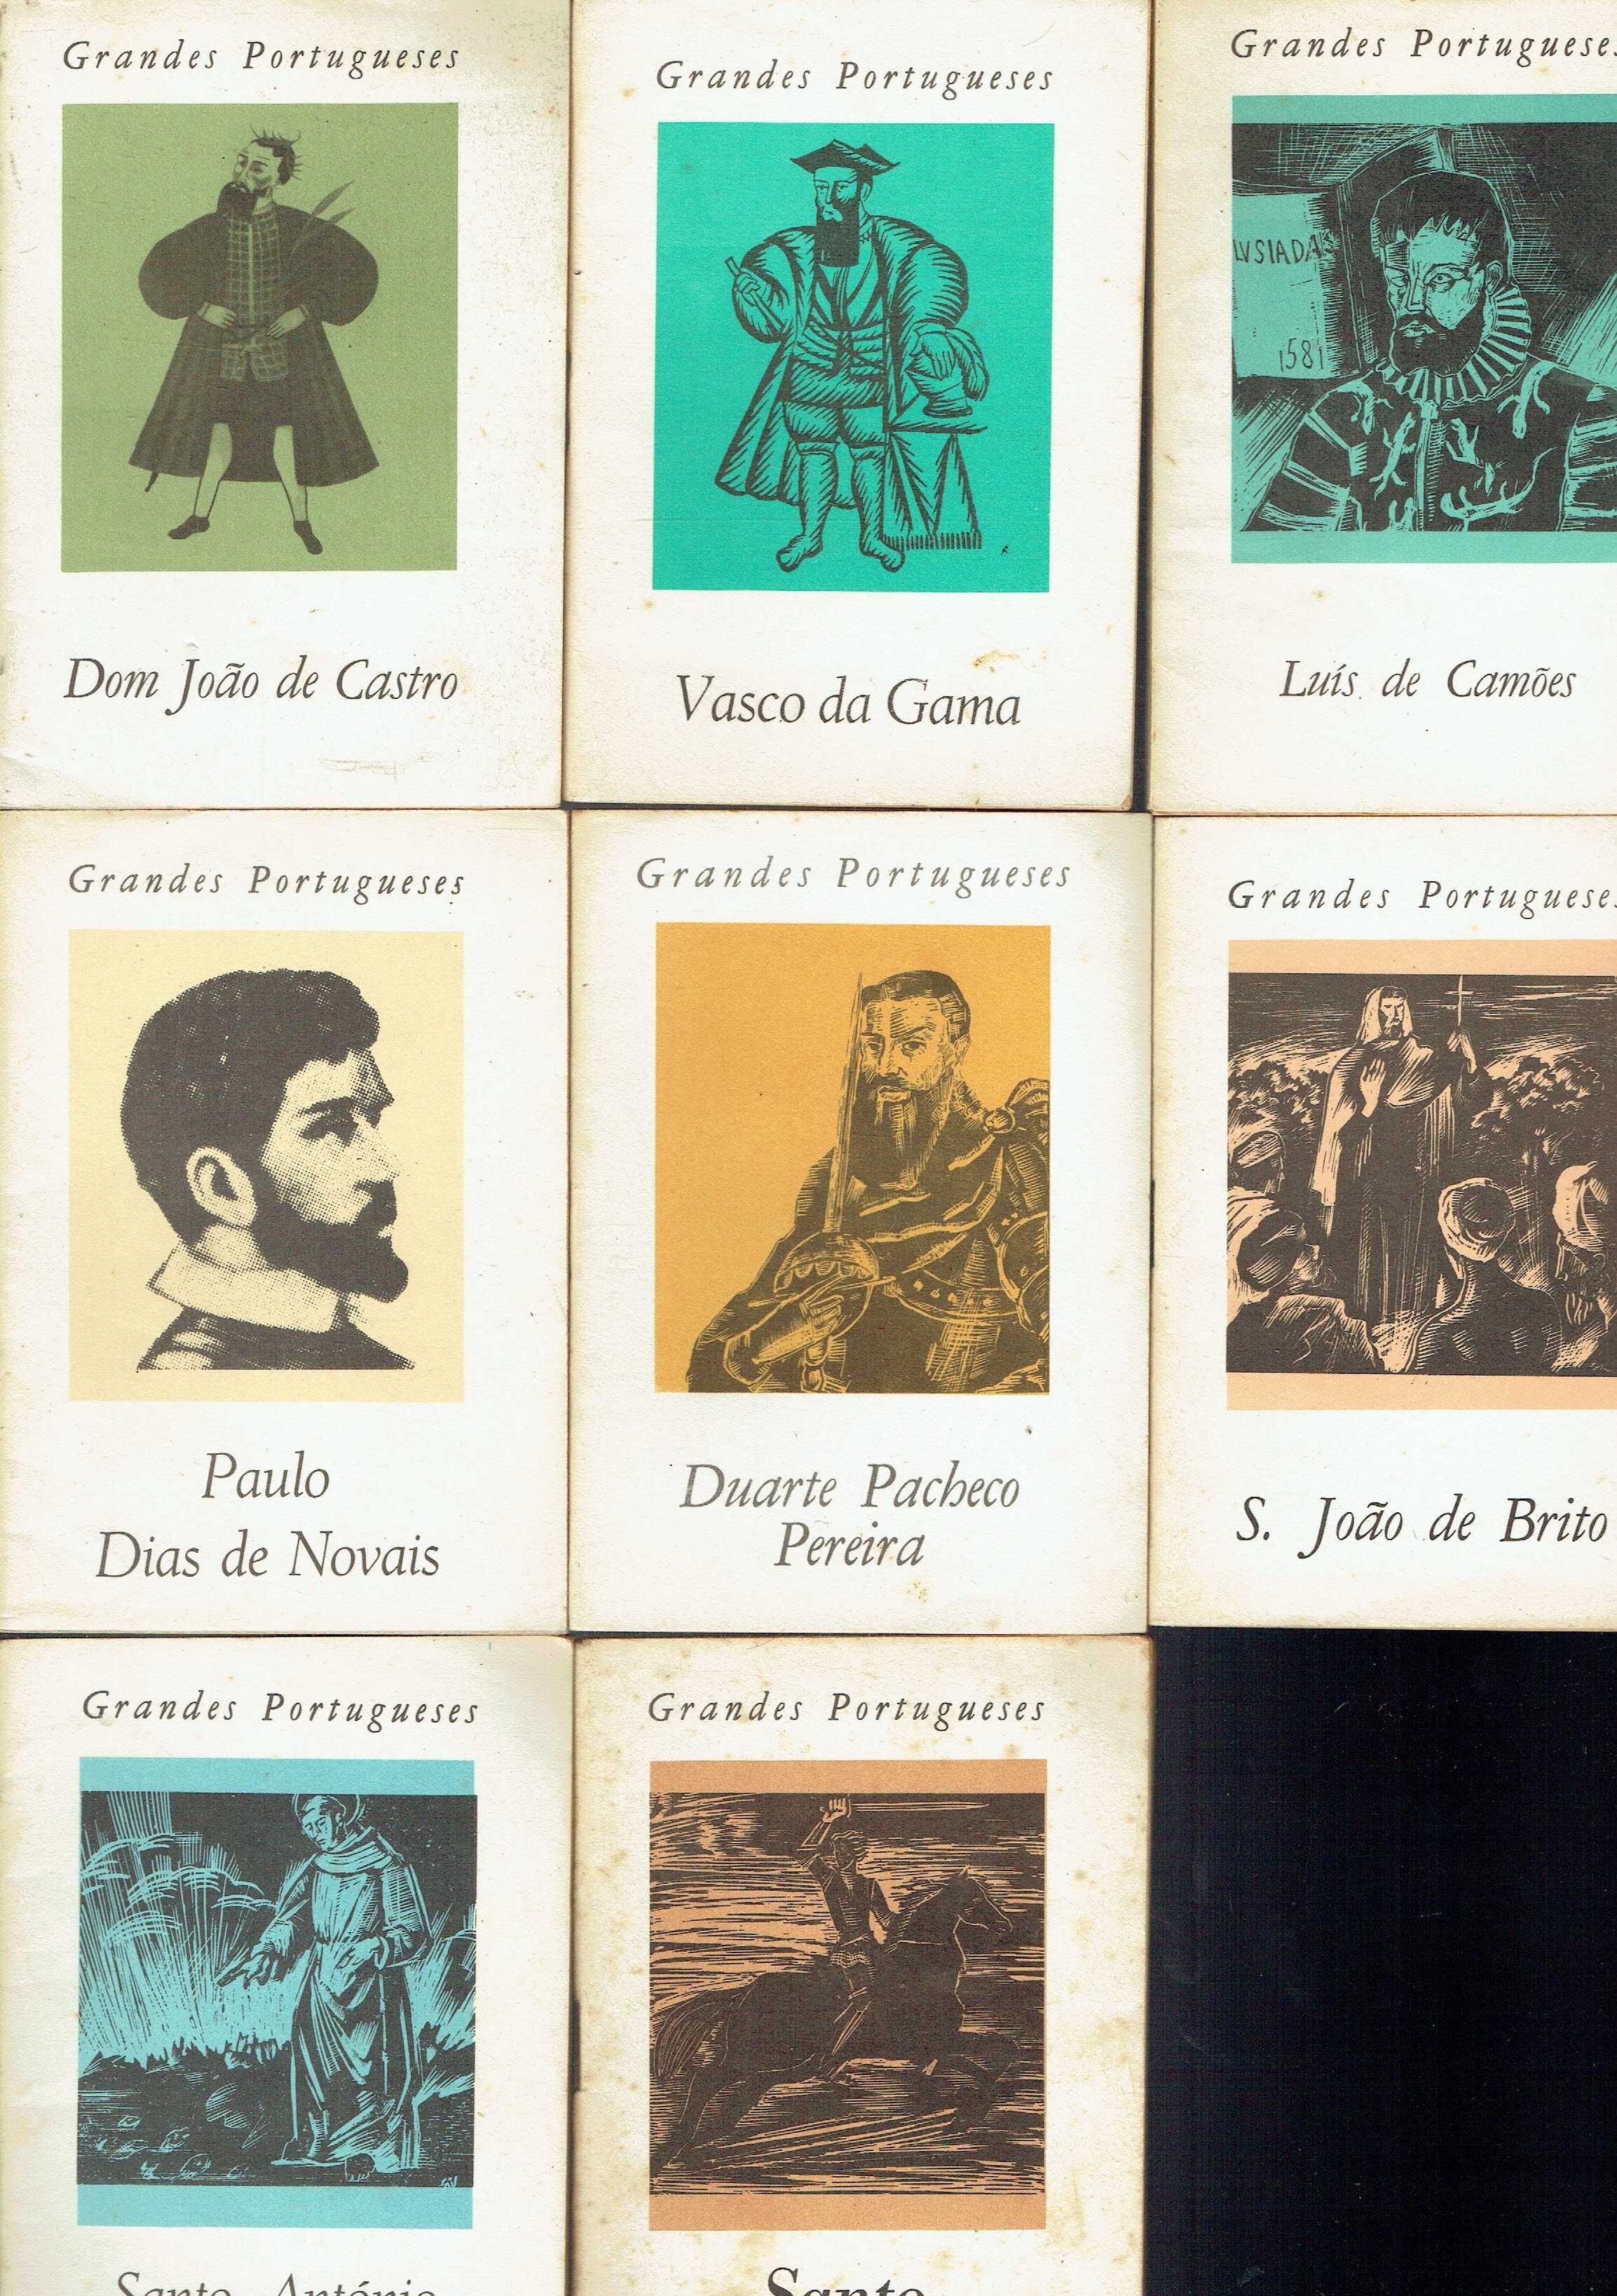 3832

Grandes Portugueses

edições SPN